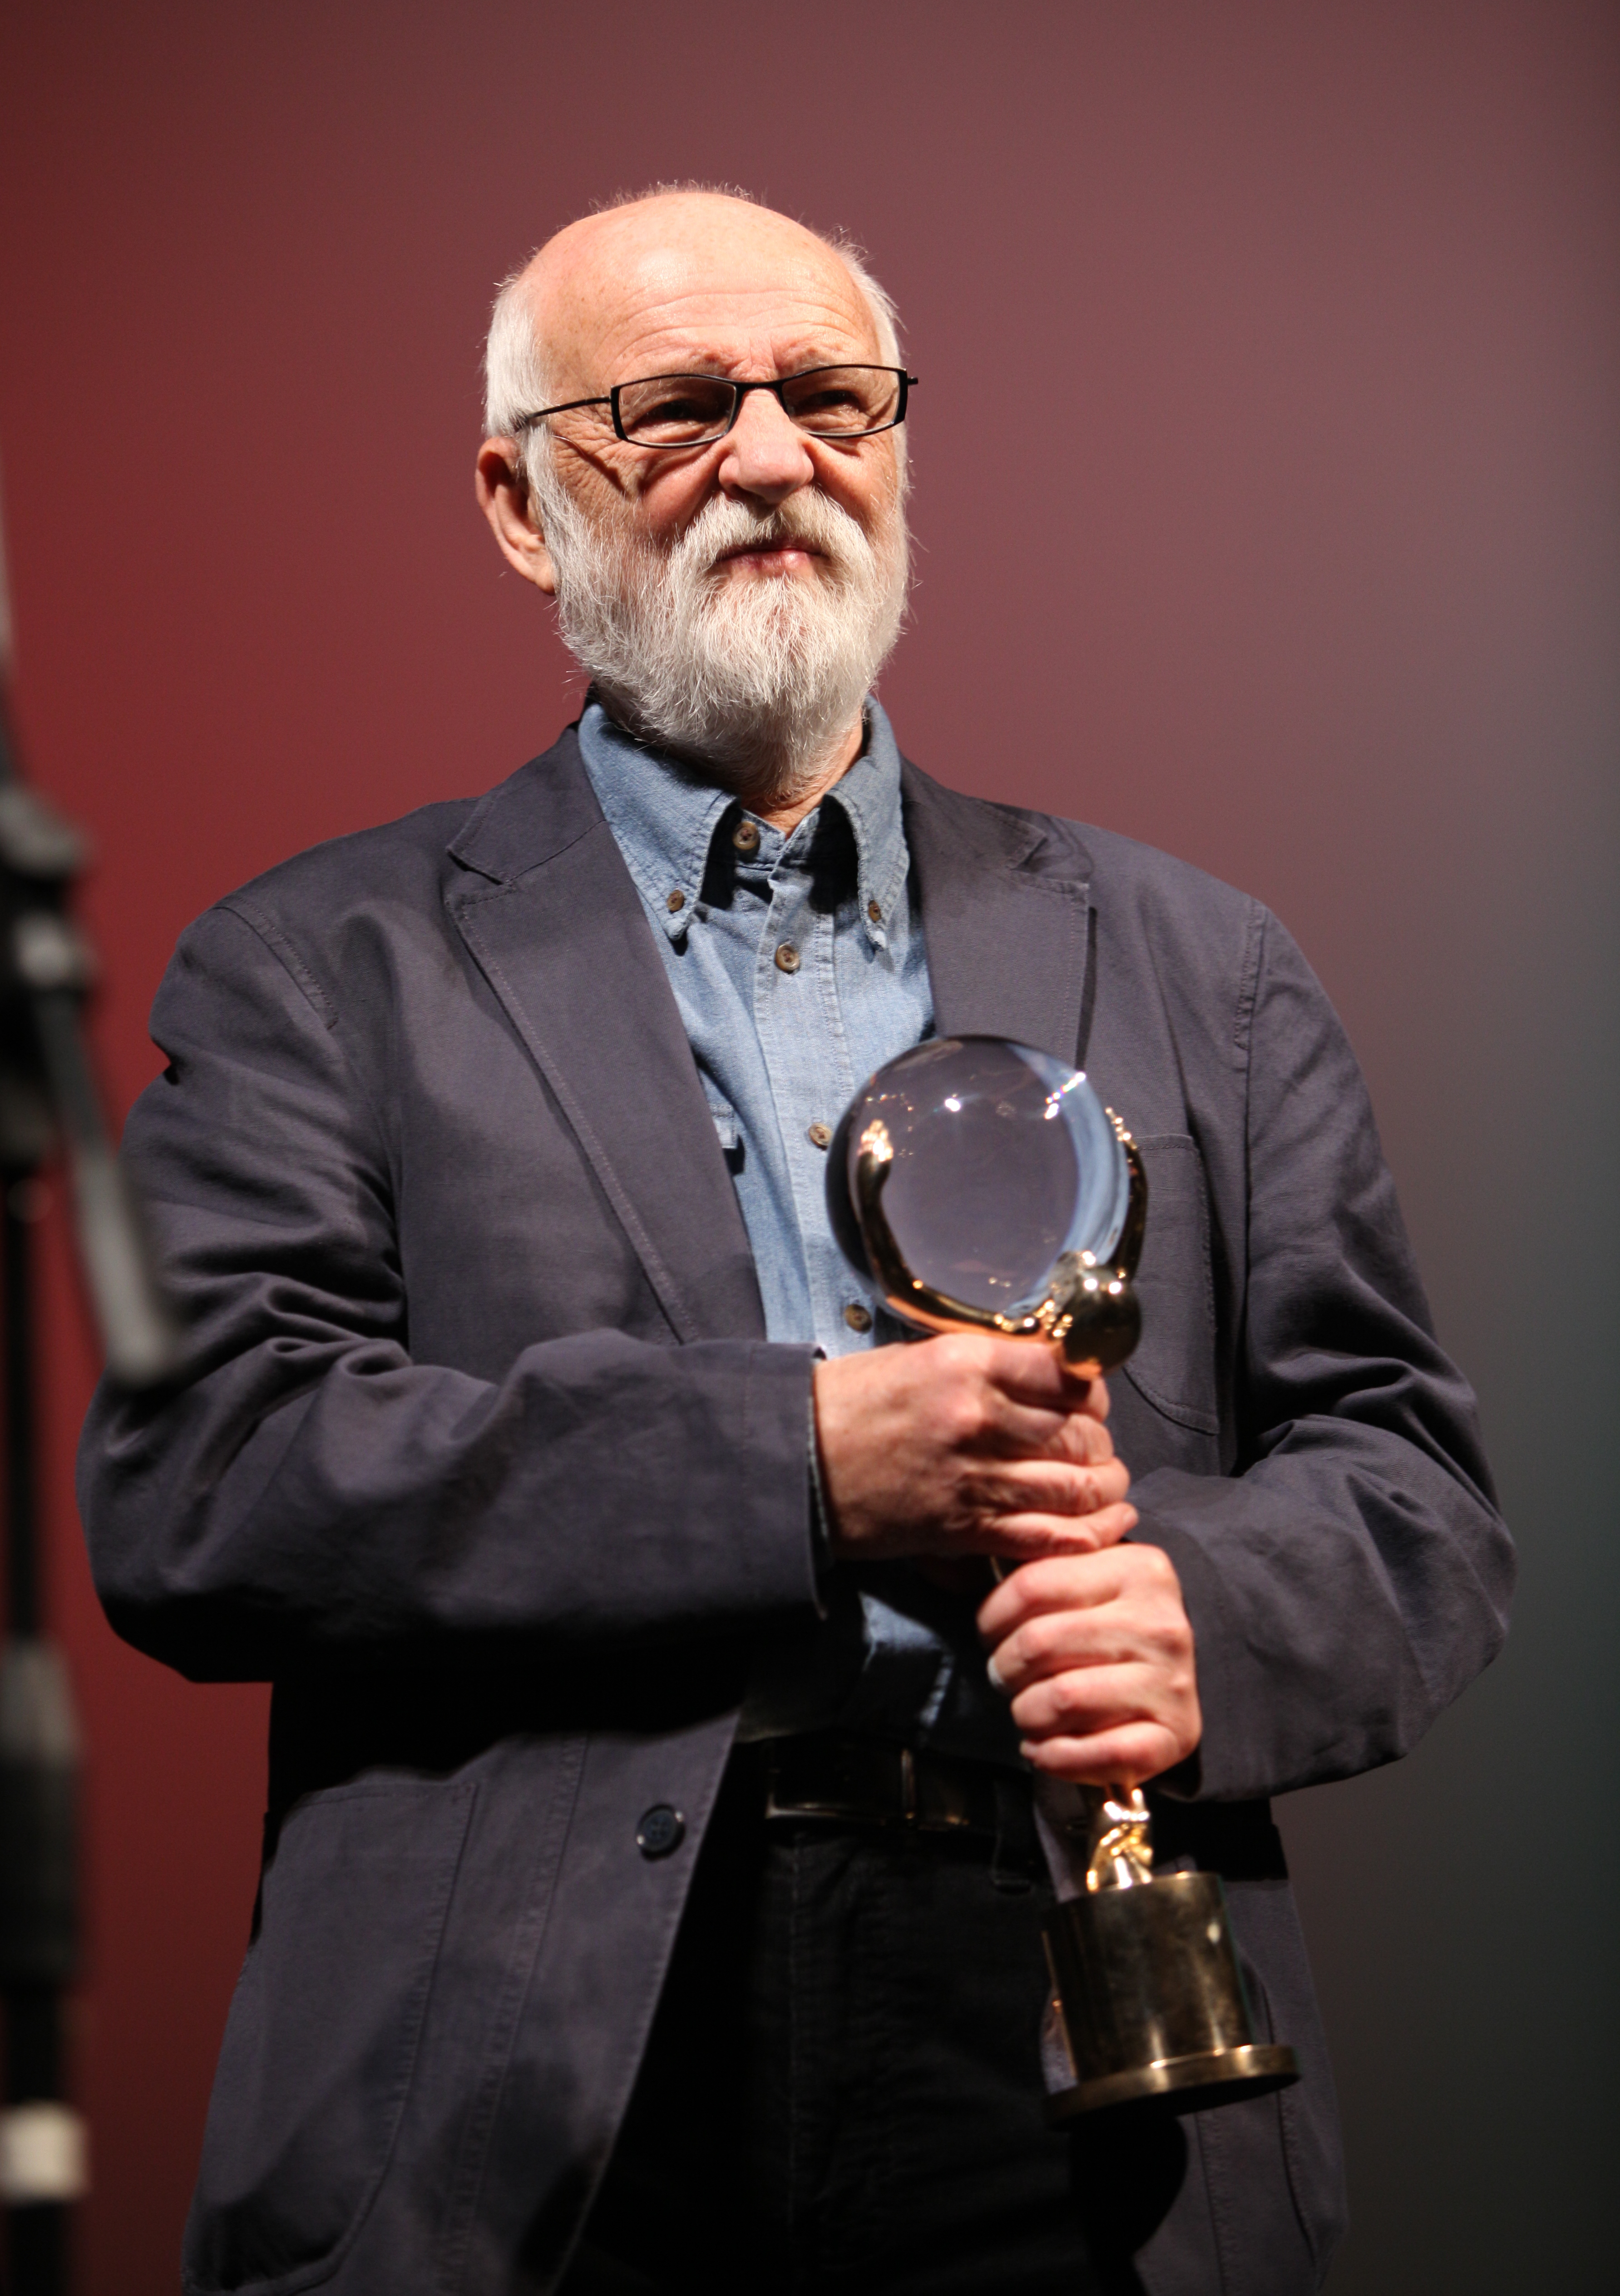 Jan Švankmajer 2009 mit dem Spezial-Kristallglobus für seinen herausragenden künstlerischen Beitrag zum Weltkino, den er beim Filmfestival in Karlovy Vary erhalten hat. ©Petr Novák, Wikipedia, Wikimedia Commons, CC-BY-SA 3.0